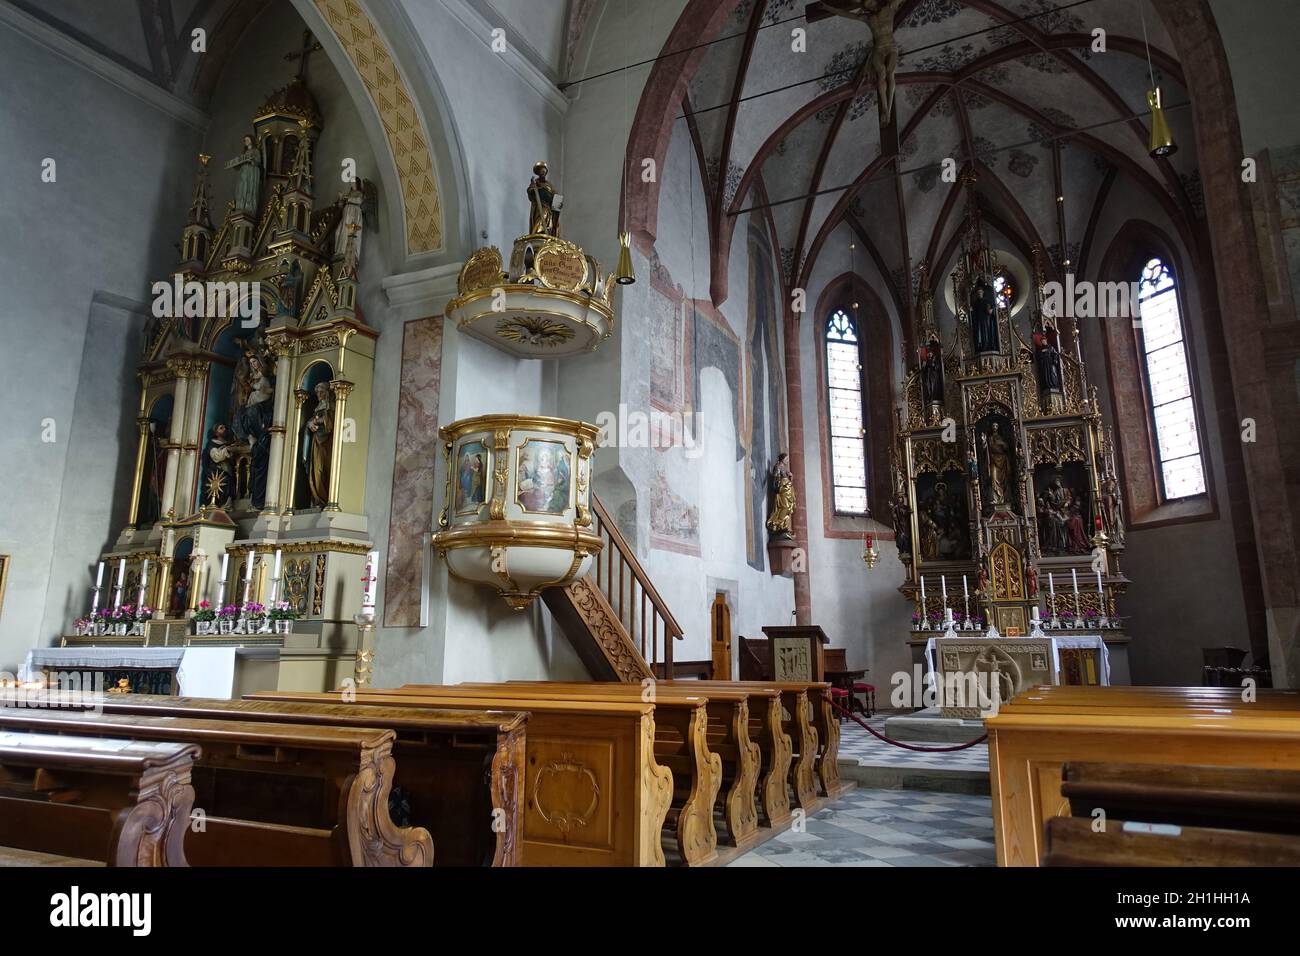 Intenausstattung der Pfarrkirche St. Leonhard, St. Leonhard in Passeier, Südtirol, Italie Banque D'Images